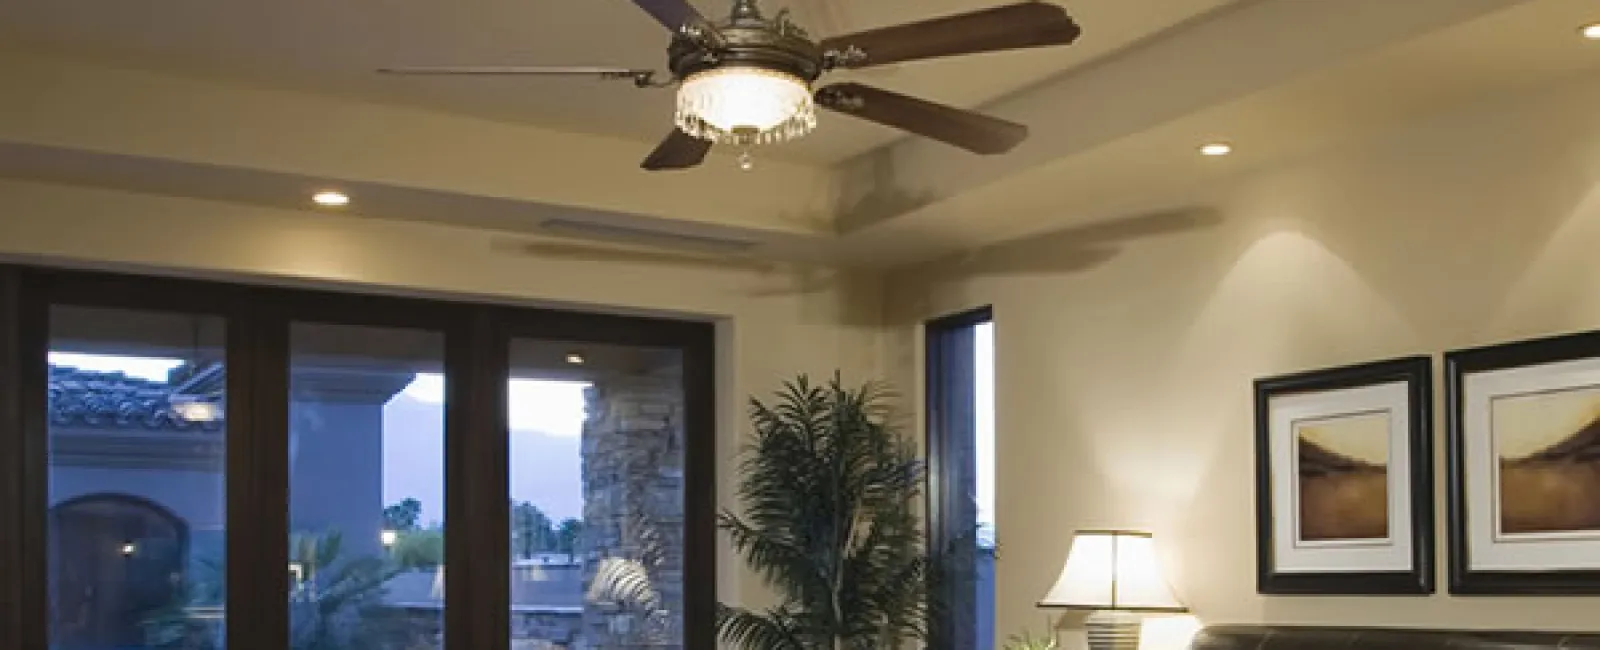 Ceiling Fan Installation in Alpharetta